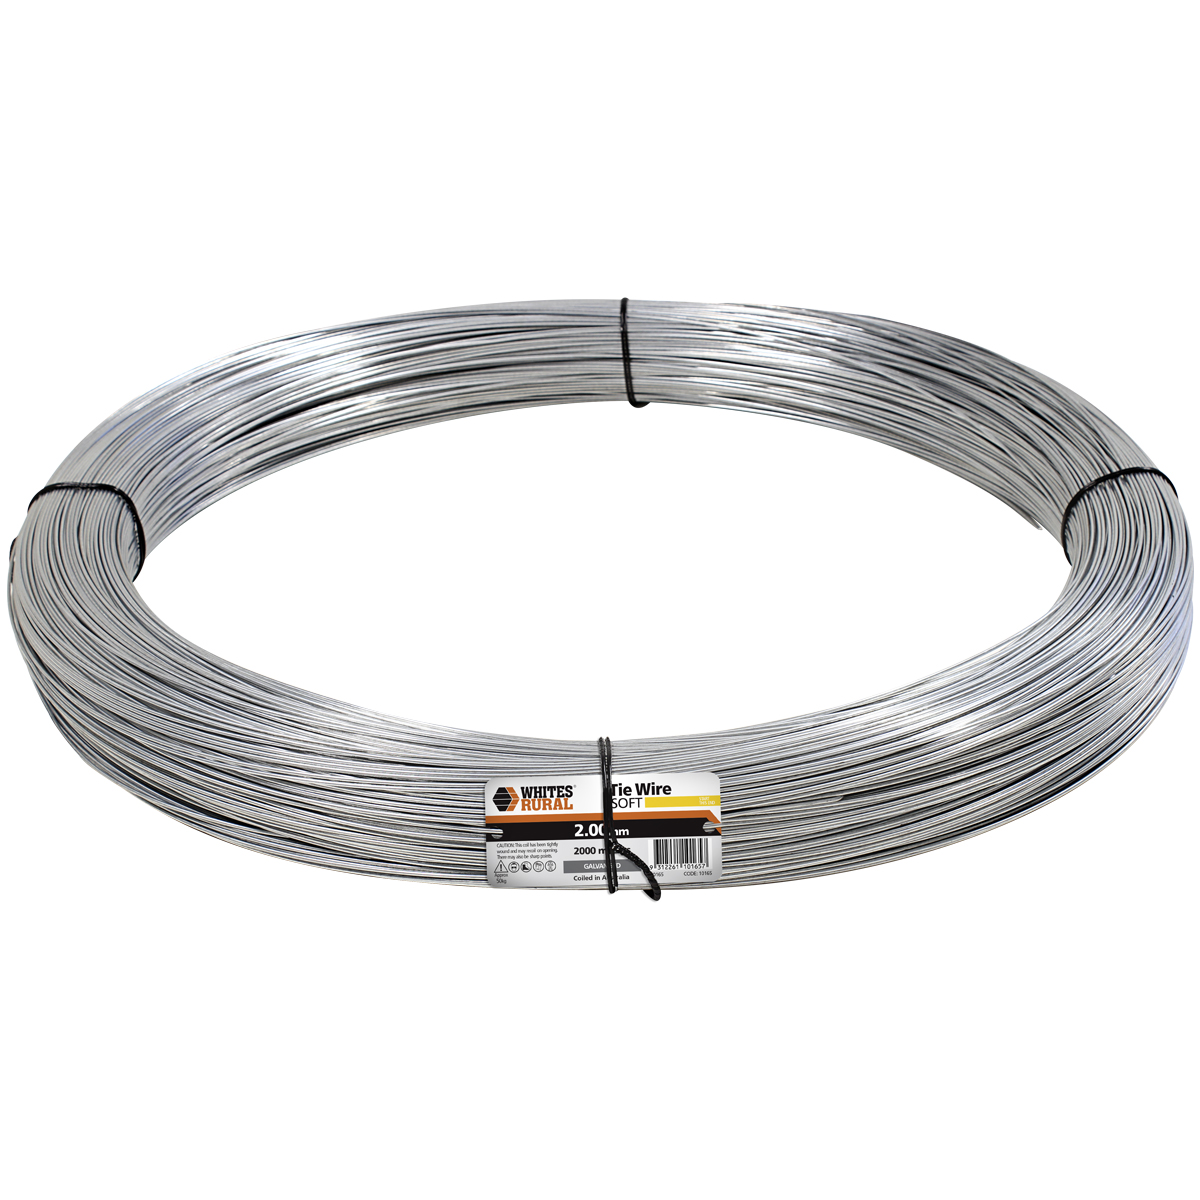 10165 - Tie Wire Soft, Standard Galvanised